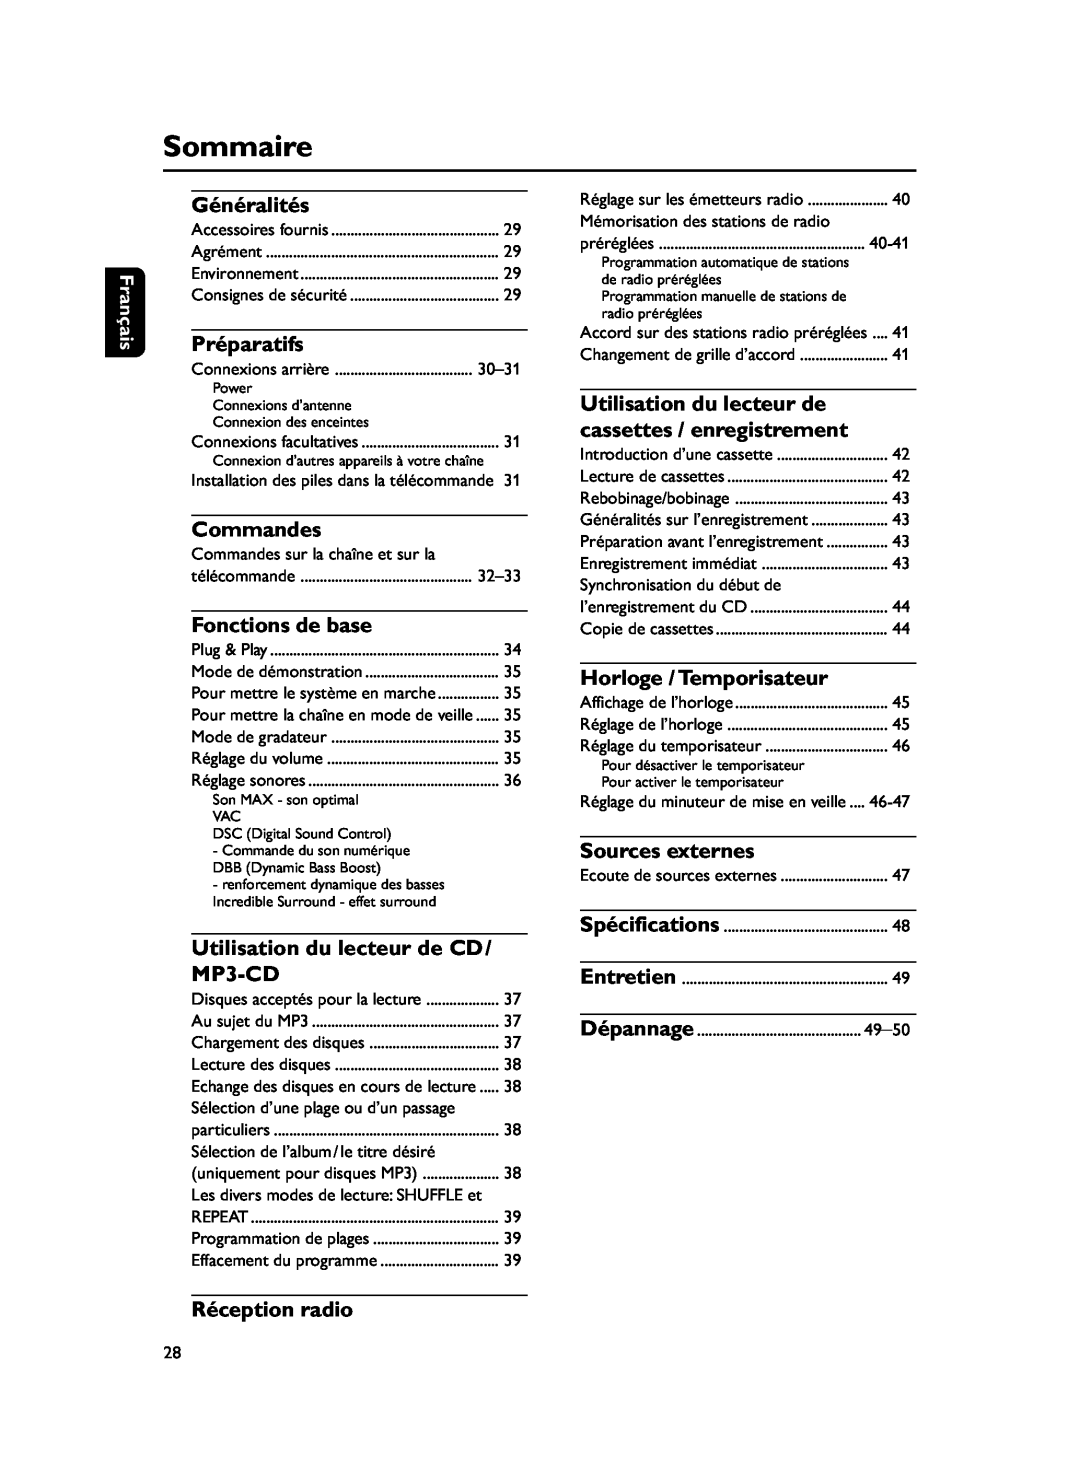 Philips FWM37 manual Sommaire, Généralités, Préparatifs, Commandes, Fonctions de base, Utilisation du lecteur de CD, MP3-CD 